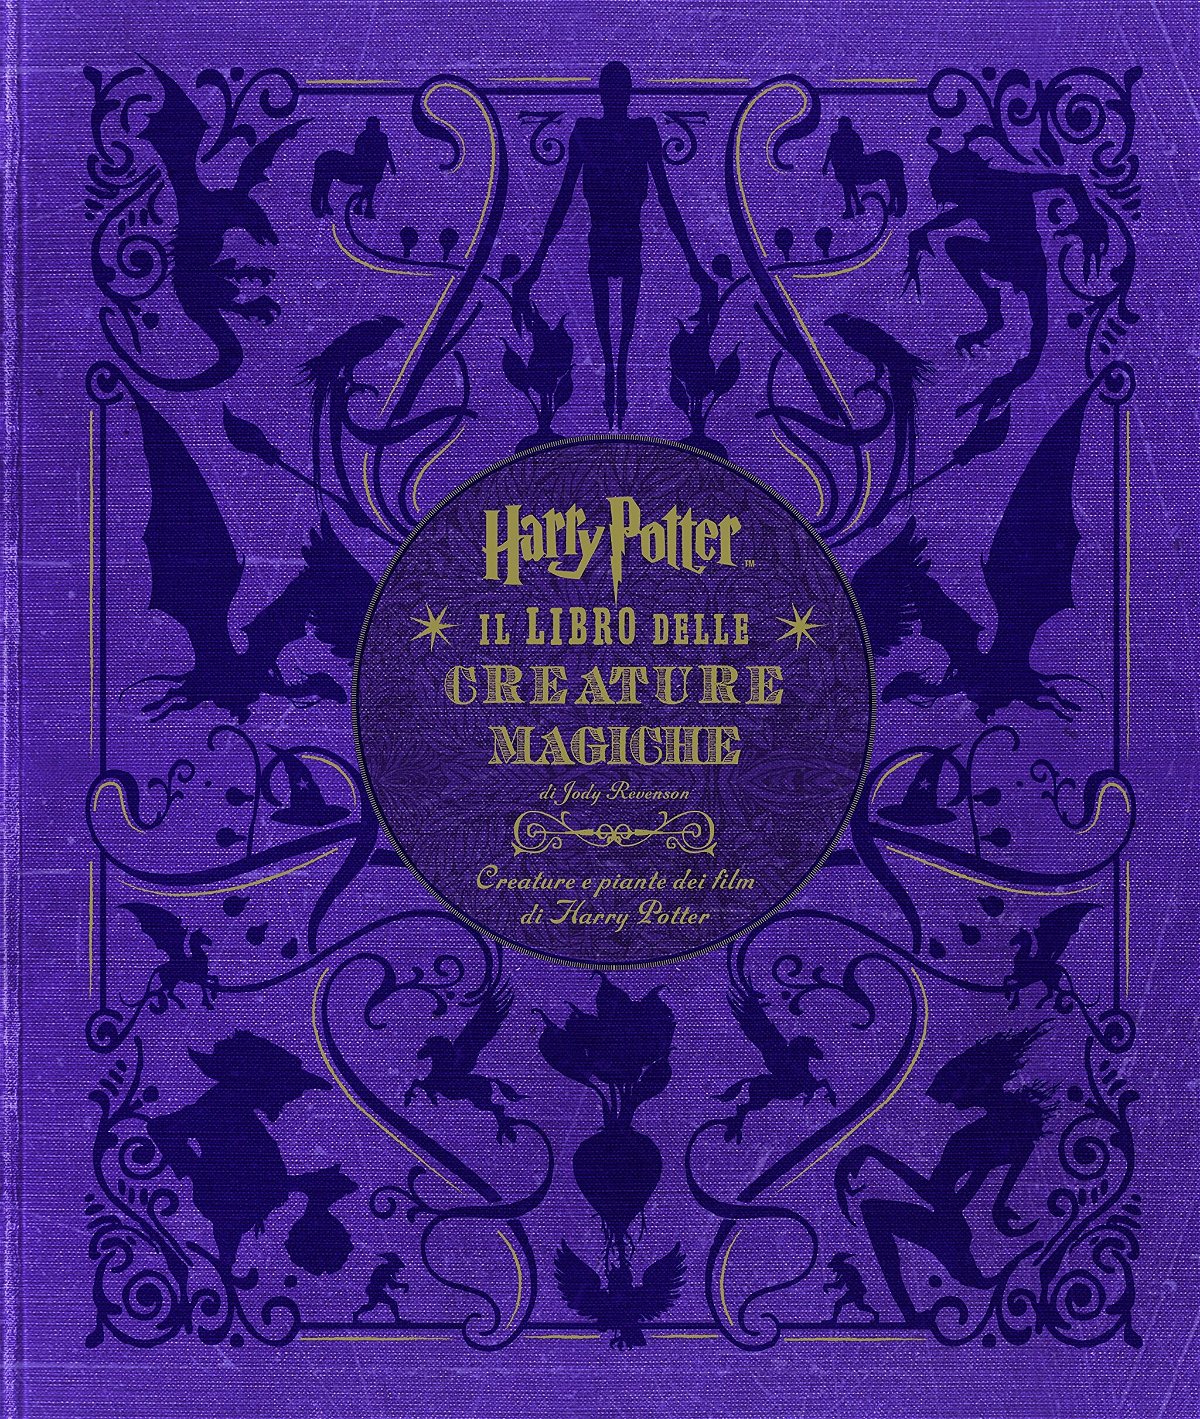 Harry Potter. Il libro delle creature magiche. Creature e piante dei film di Harry Potter